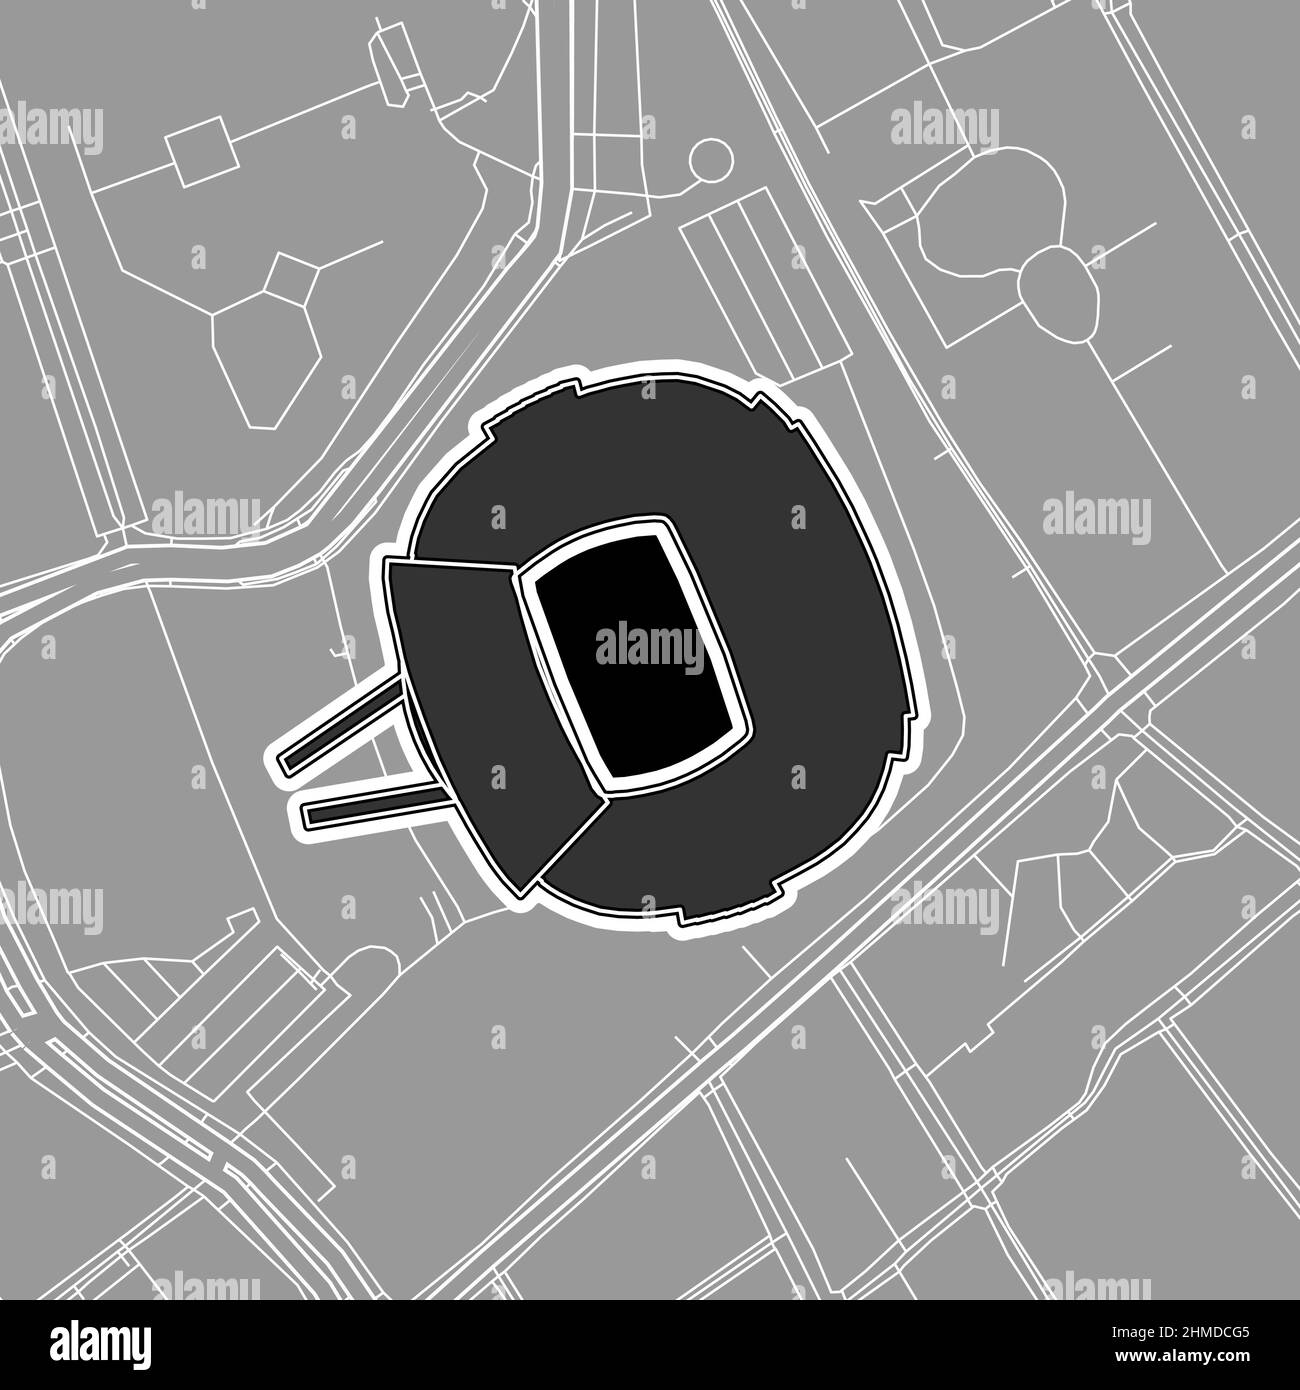 Barcelone, stade de baseball MLB, carte vectorielle. La carte du statium de base-ball a été tracée avec des zones blanches et des lignes pour les routes principales, les routes latérales. Illustration de Vecteur